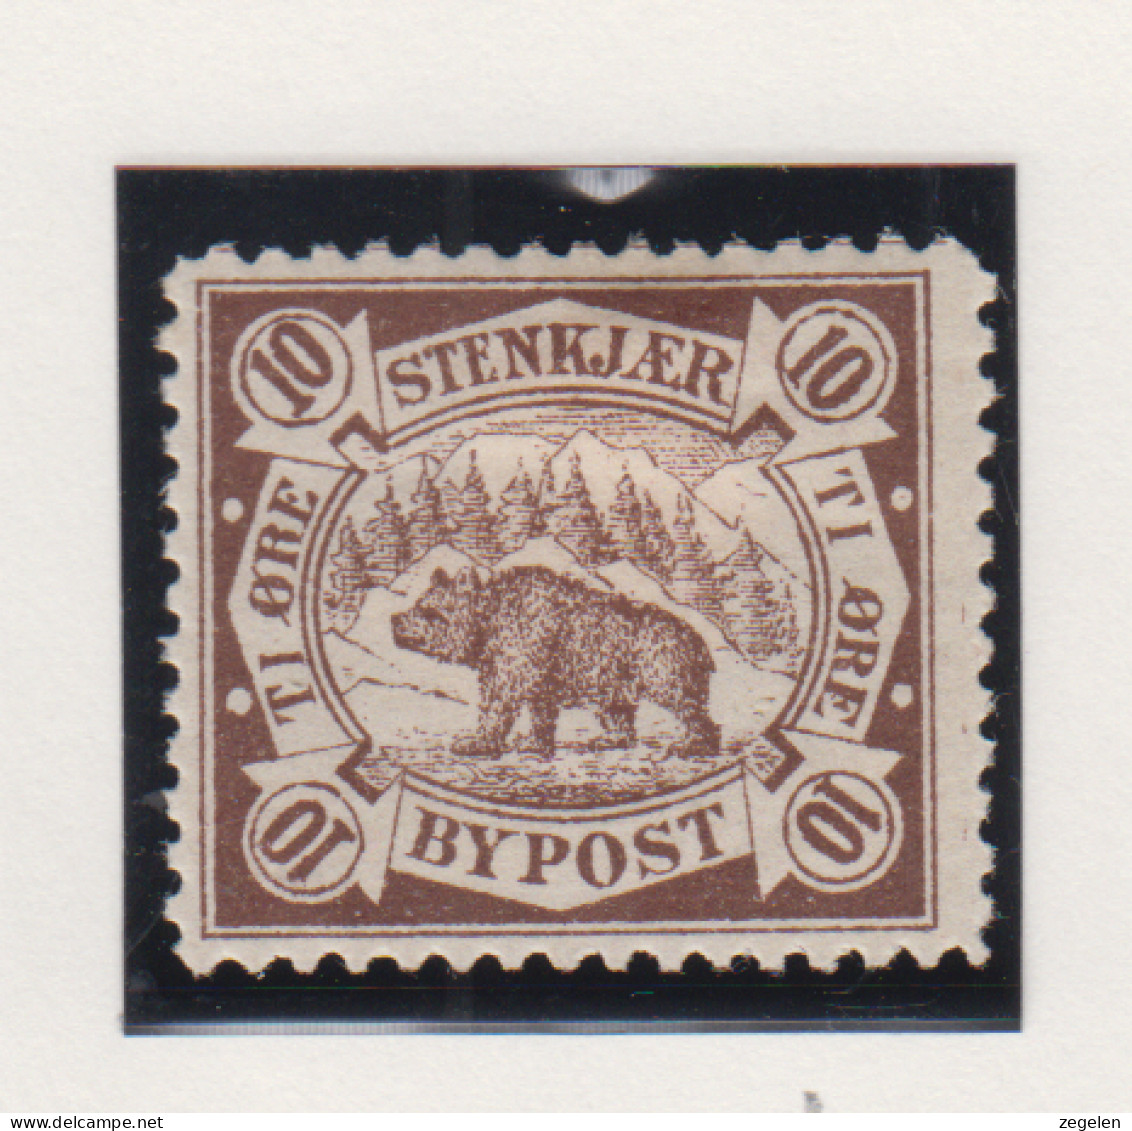 Noorwegen Lokale Zegel   Katalog Over Norges Byposter Stenkjaer Bypost 4 - Local Post Stamps